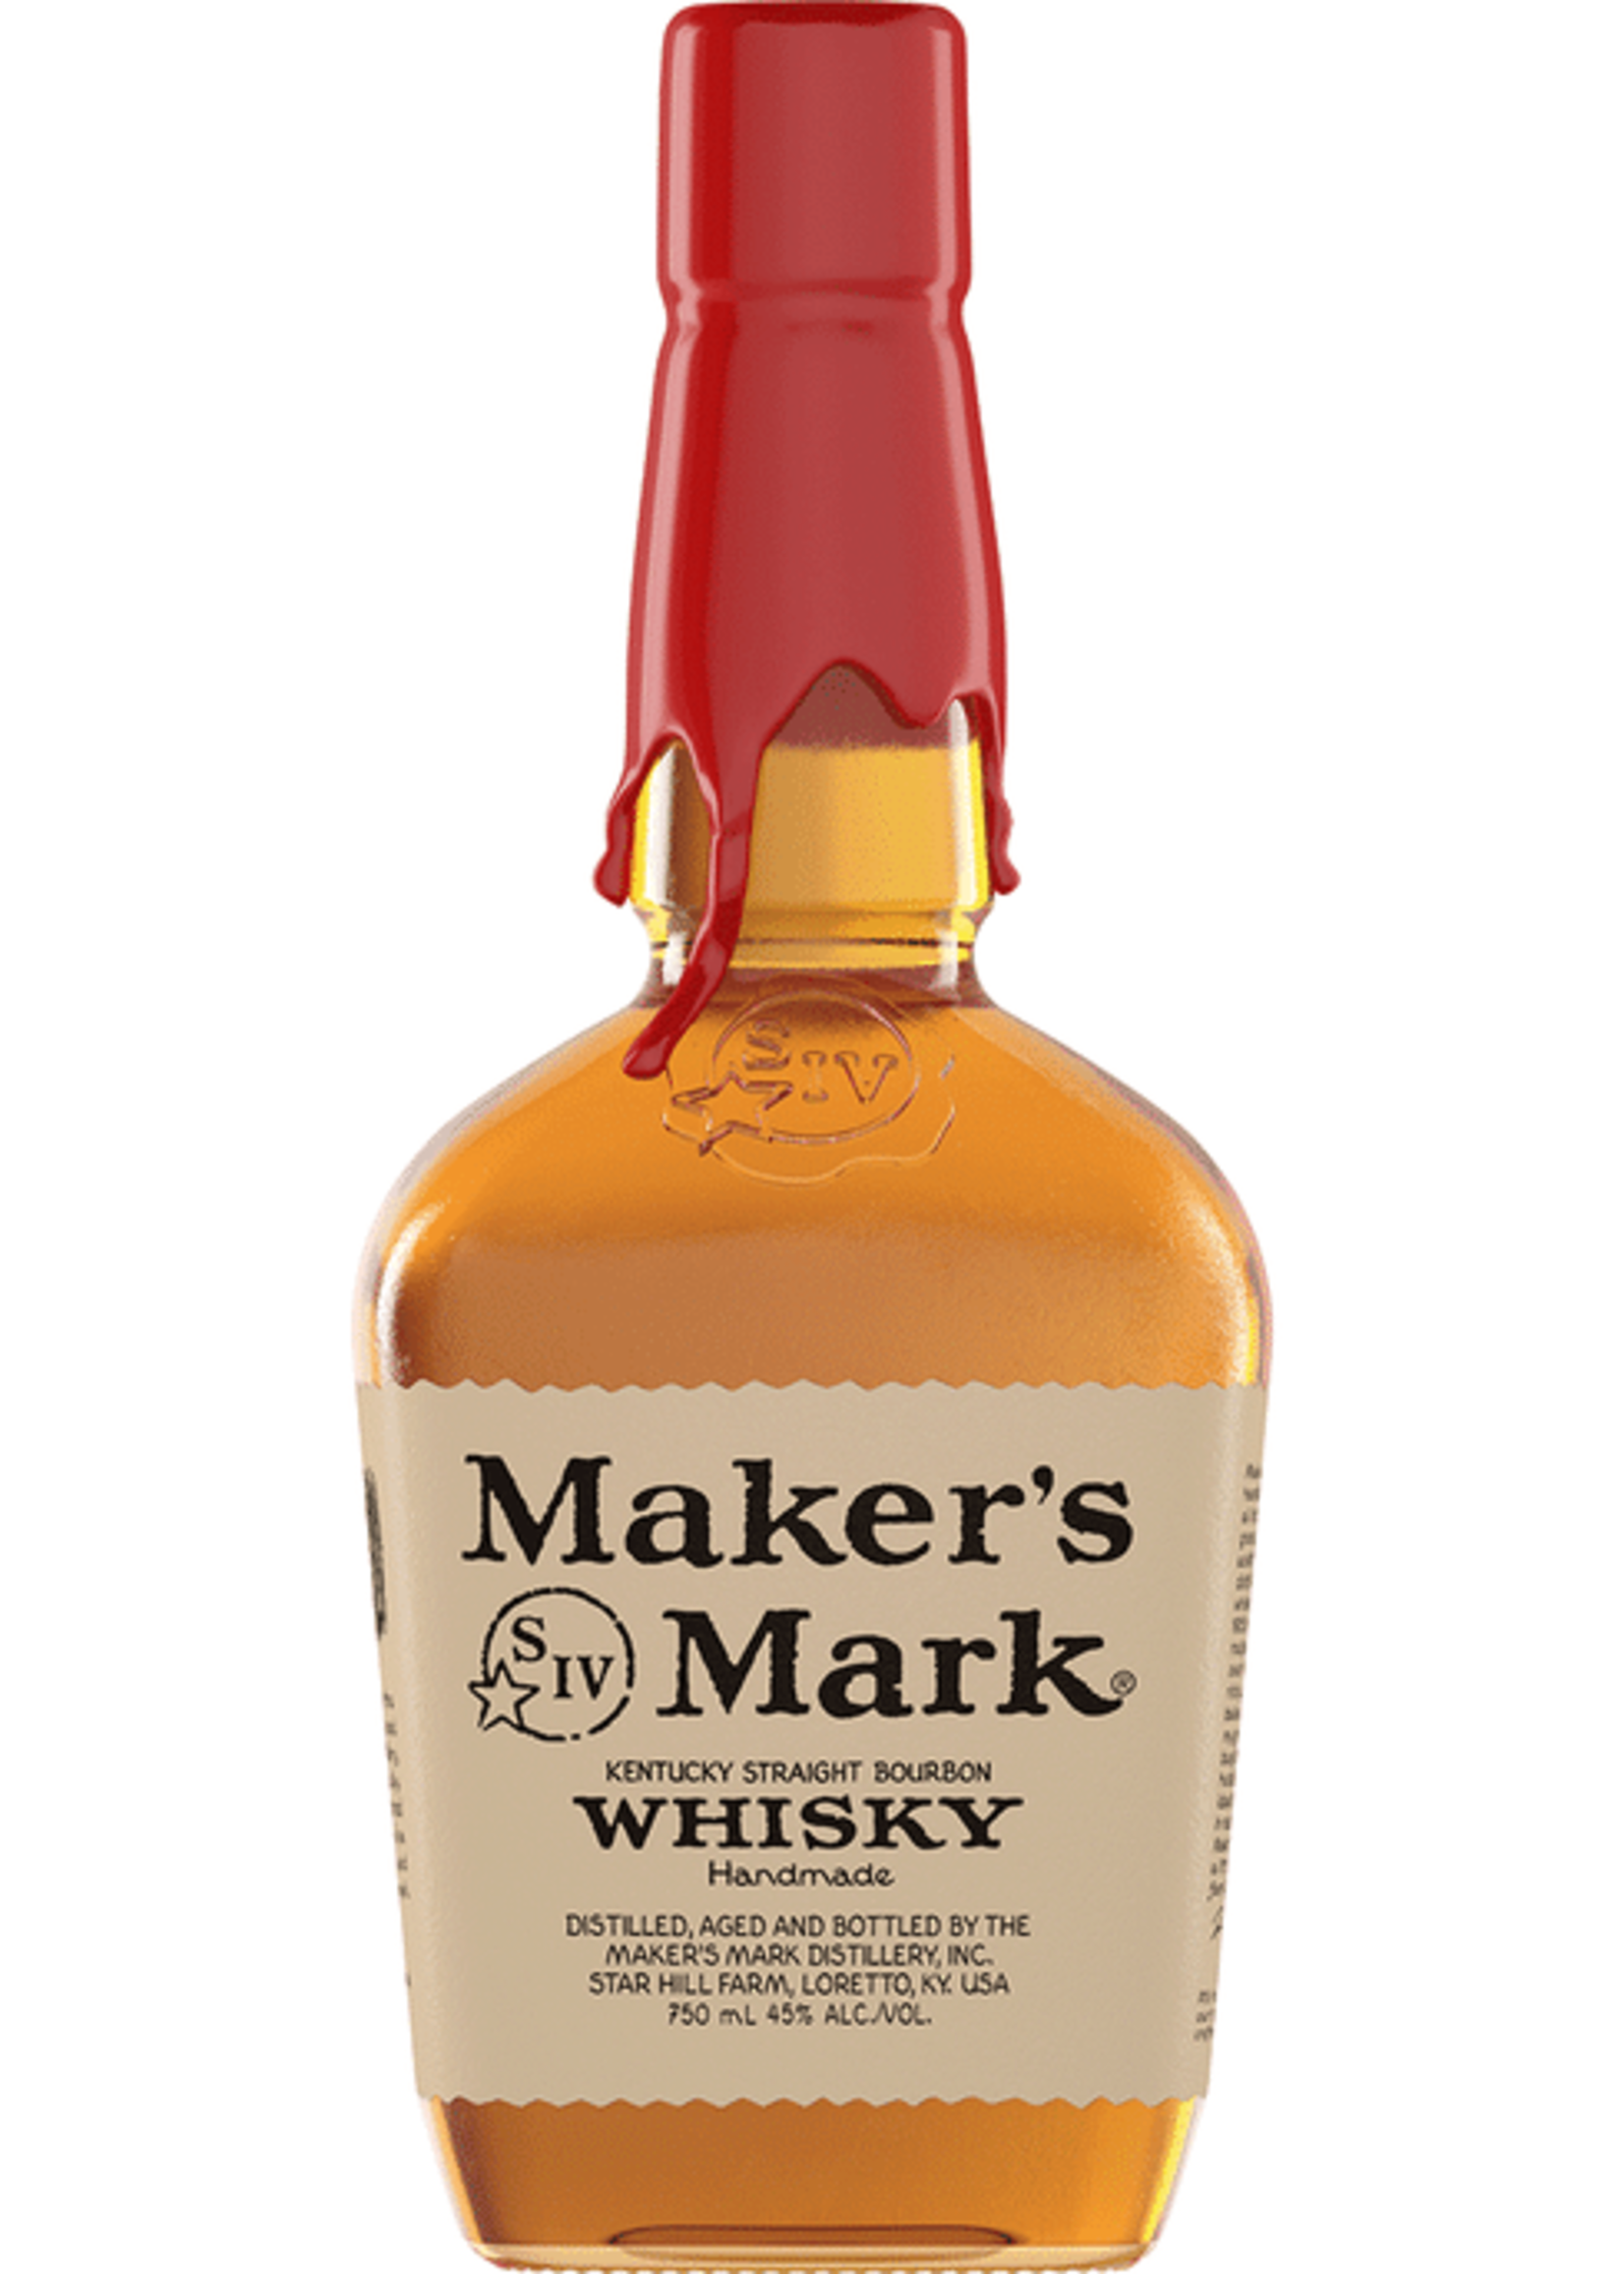 MAKER'S MARK MAKER'S MARK	BOURBON WHISKY	.375L